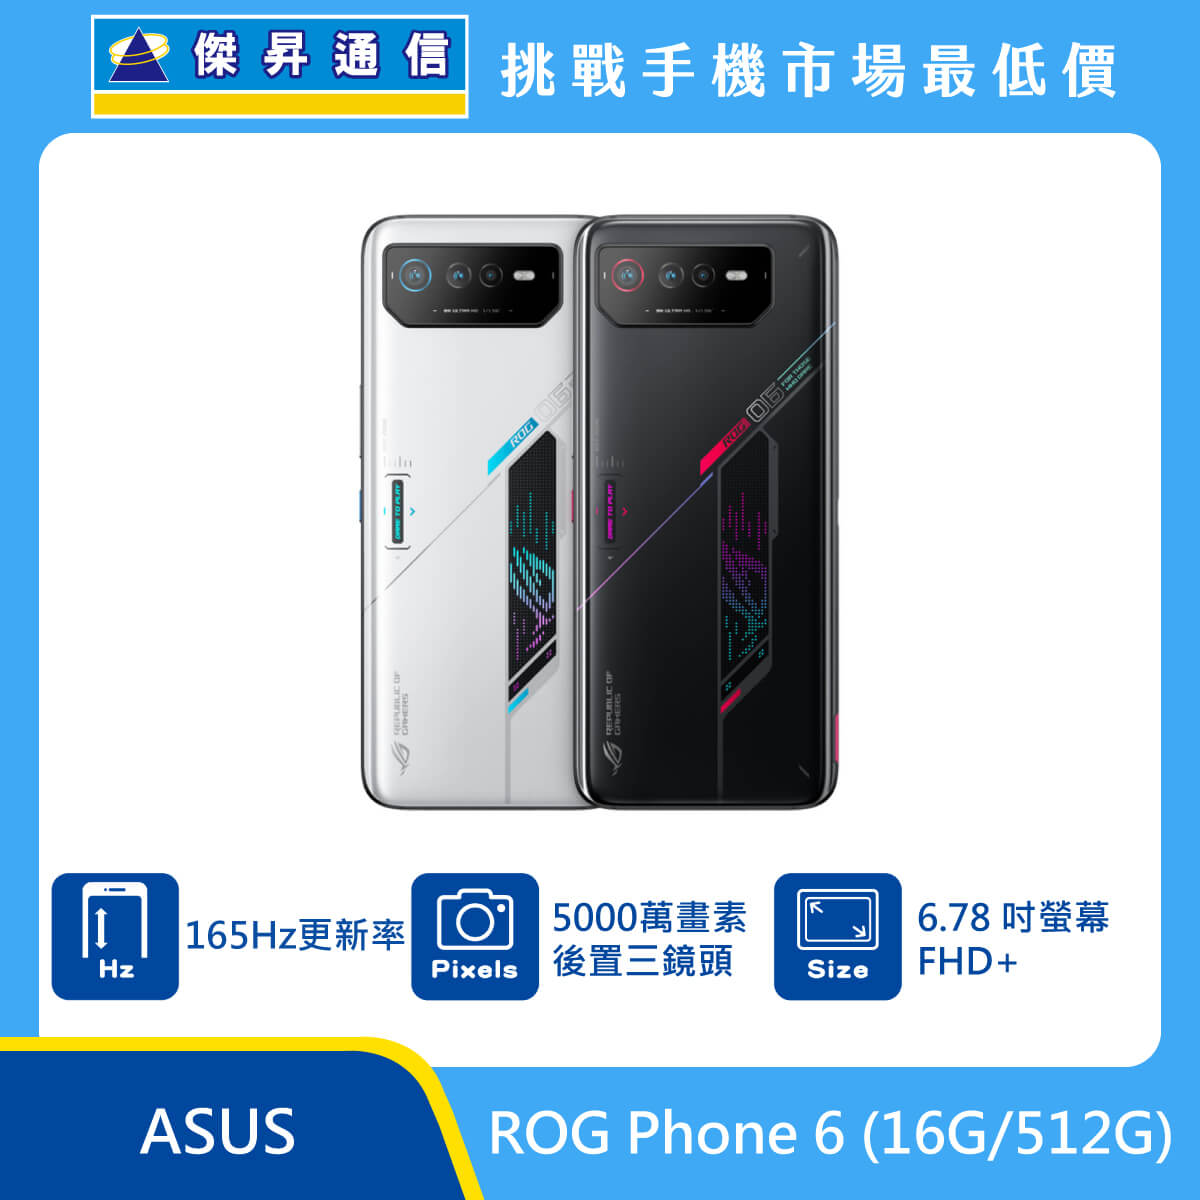 ASUS ROG Phone 6 (16G/512G)最低價格,規格,跑分,比較及評價|傑昇通信 